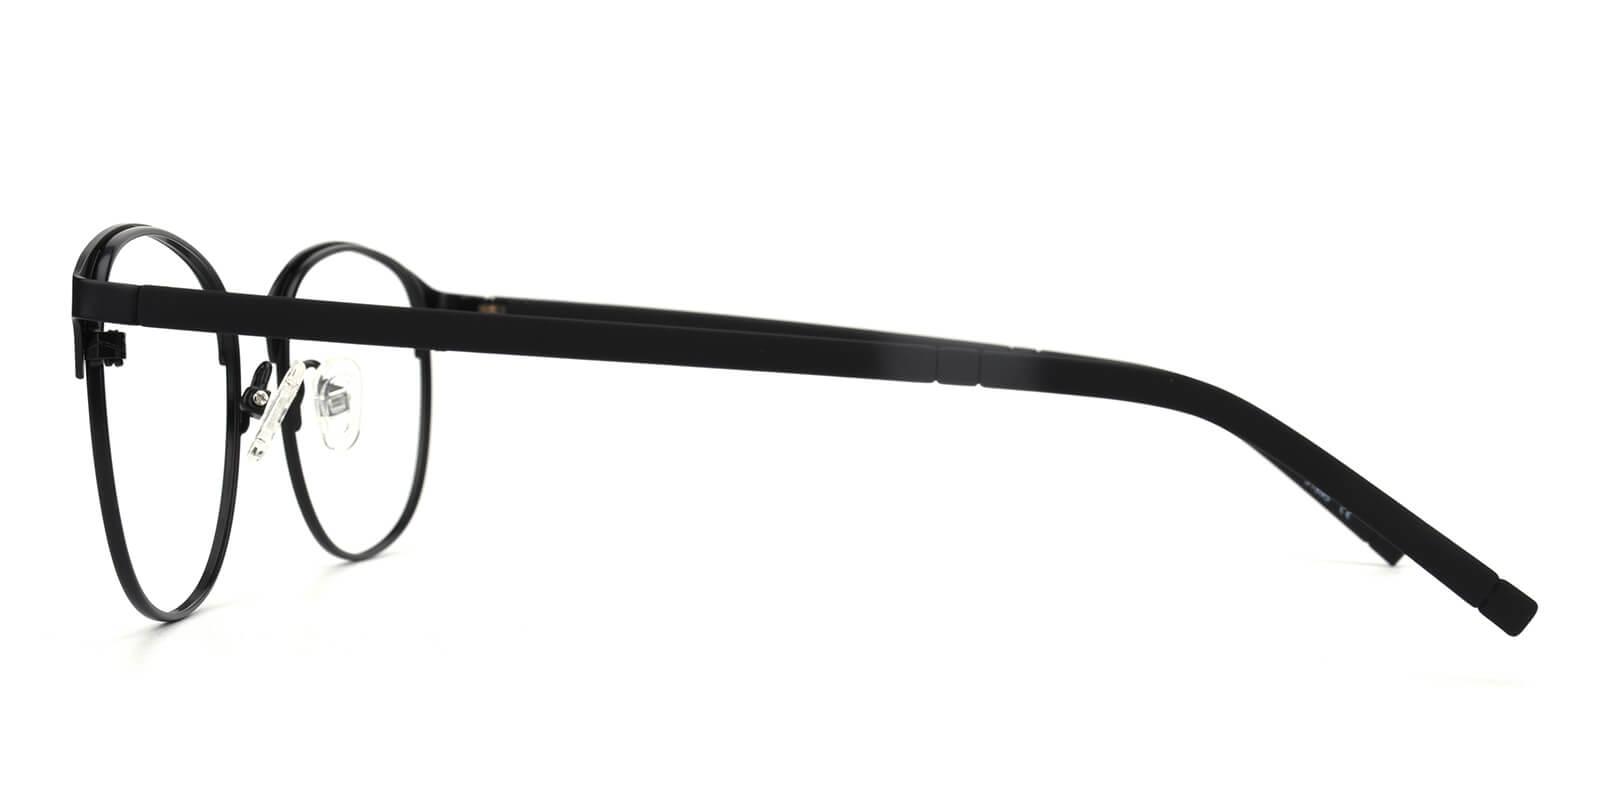 Gorge-Black-Browline-Metal-Eyeglasses-detail